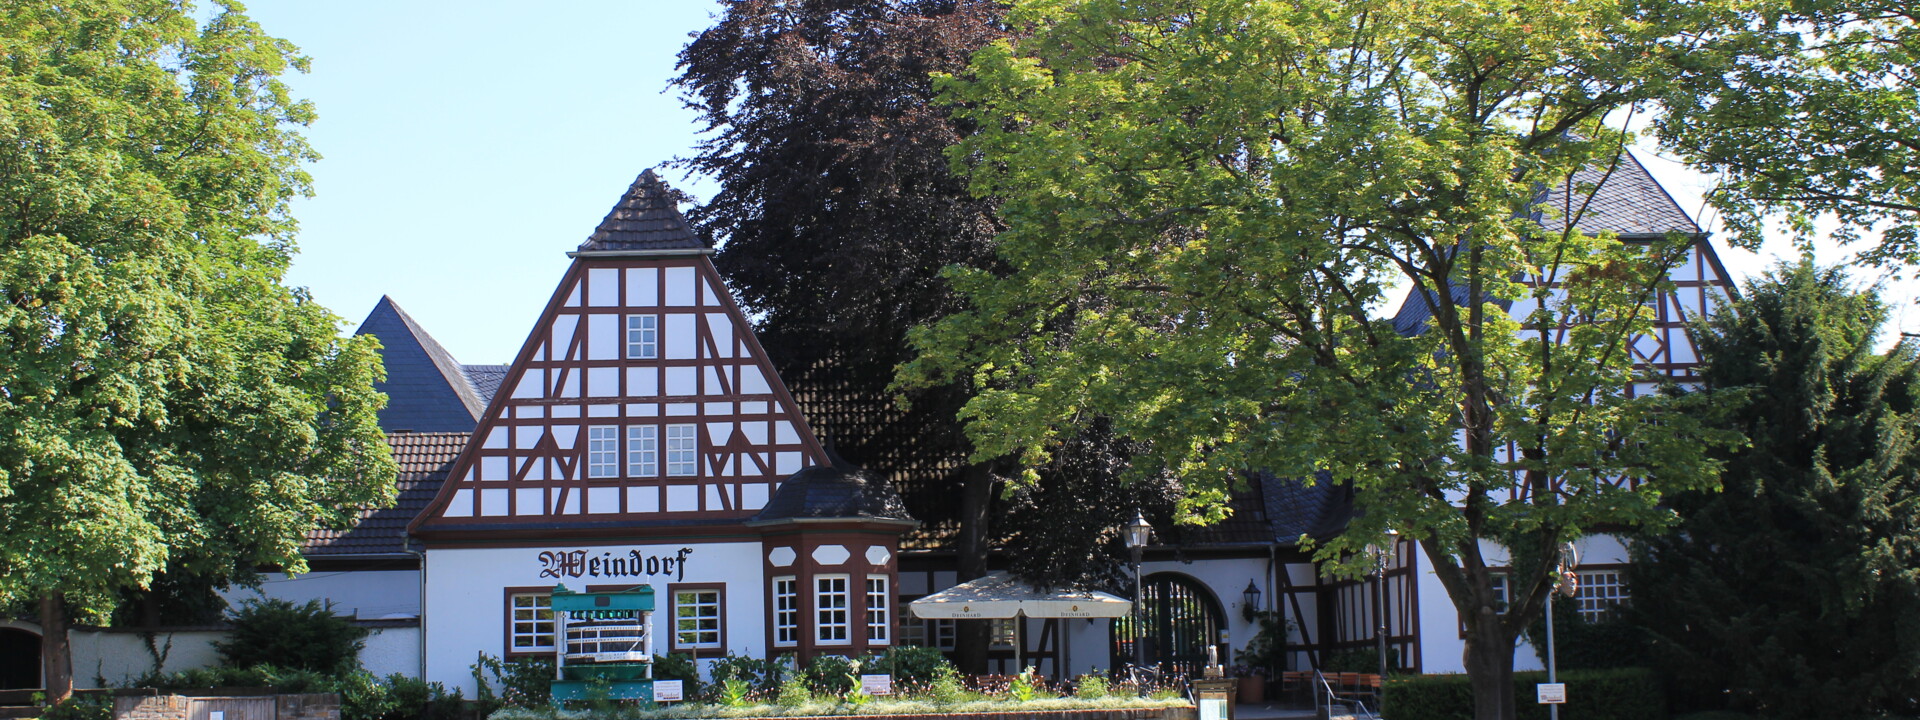 Das Weindorf in Koblenz gesehen vom Parkplatz ©Koblenz-Touristik GmbH